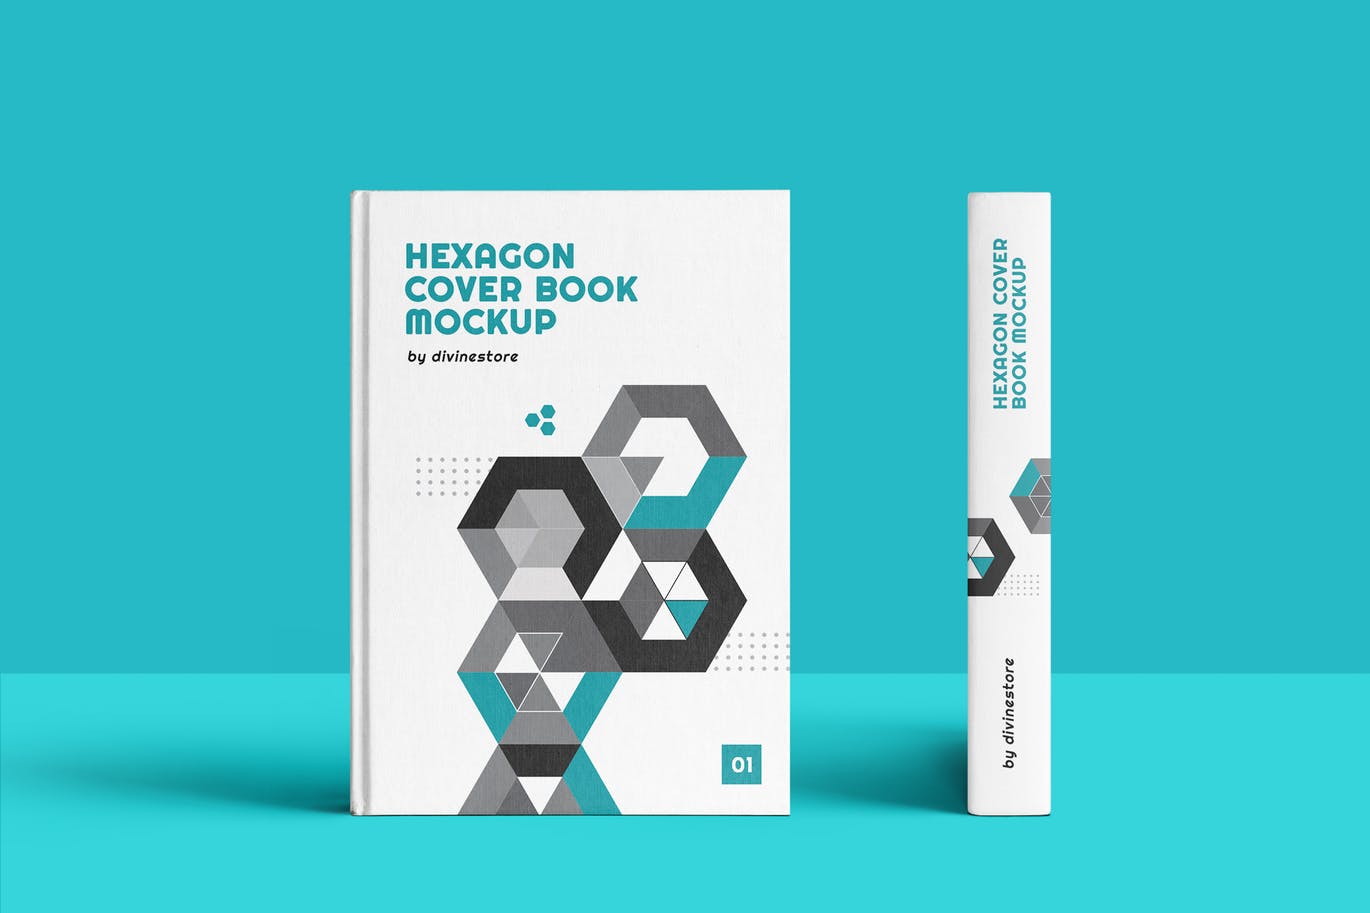 精装图书封面设计效果图样机 Hexagon Cover Book Mockup插图